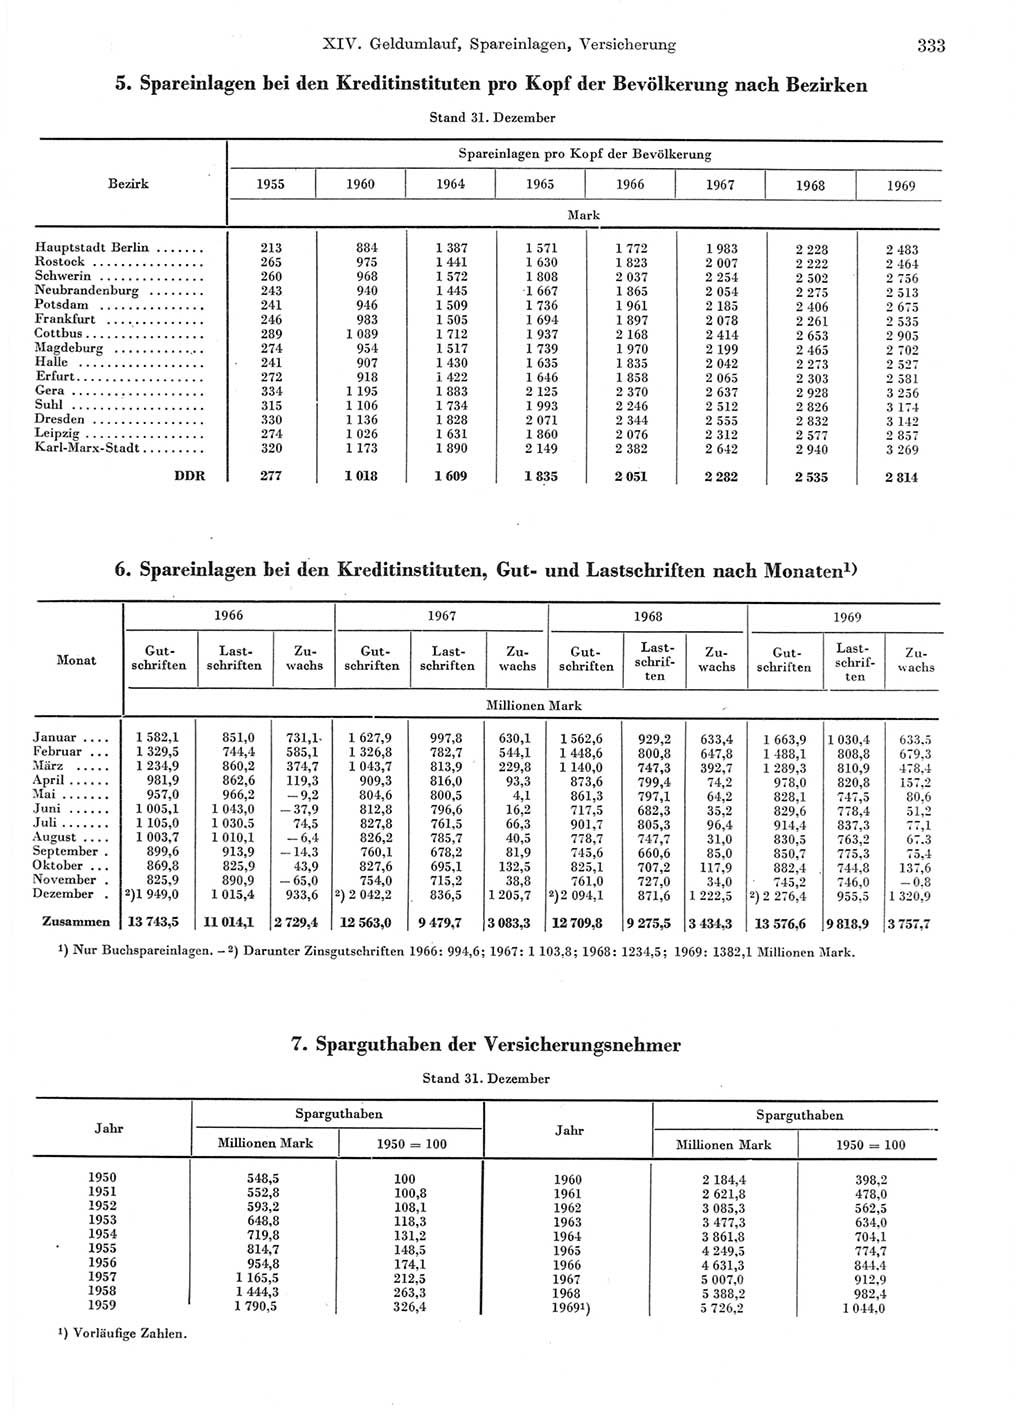 Statistisches Jahrbuch der Deutschen Demokratischen Republik (DDR) 1970, Seite 333 (Stat. Jb. DDR 1970, S. 333)